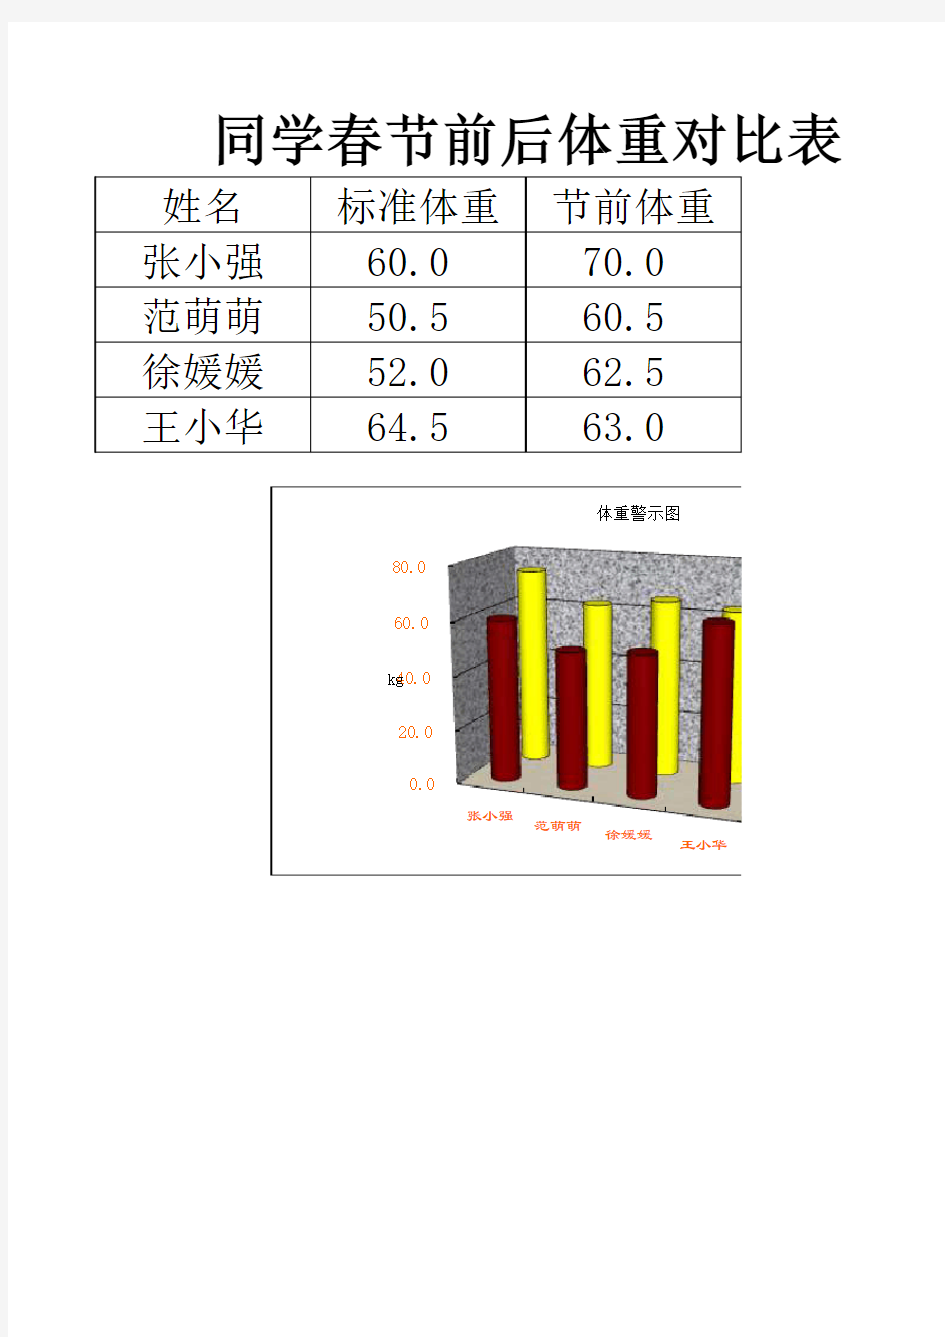 同学春节前后体重对比表(独立式三维簇状柱形图)